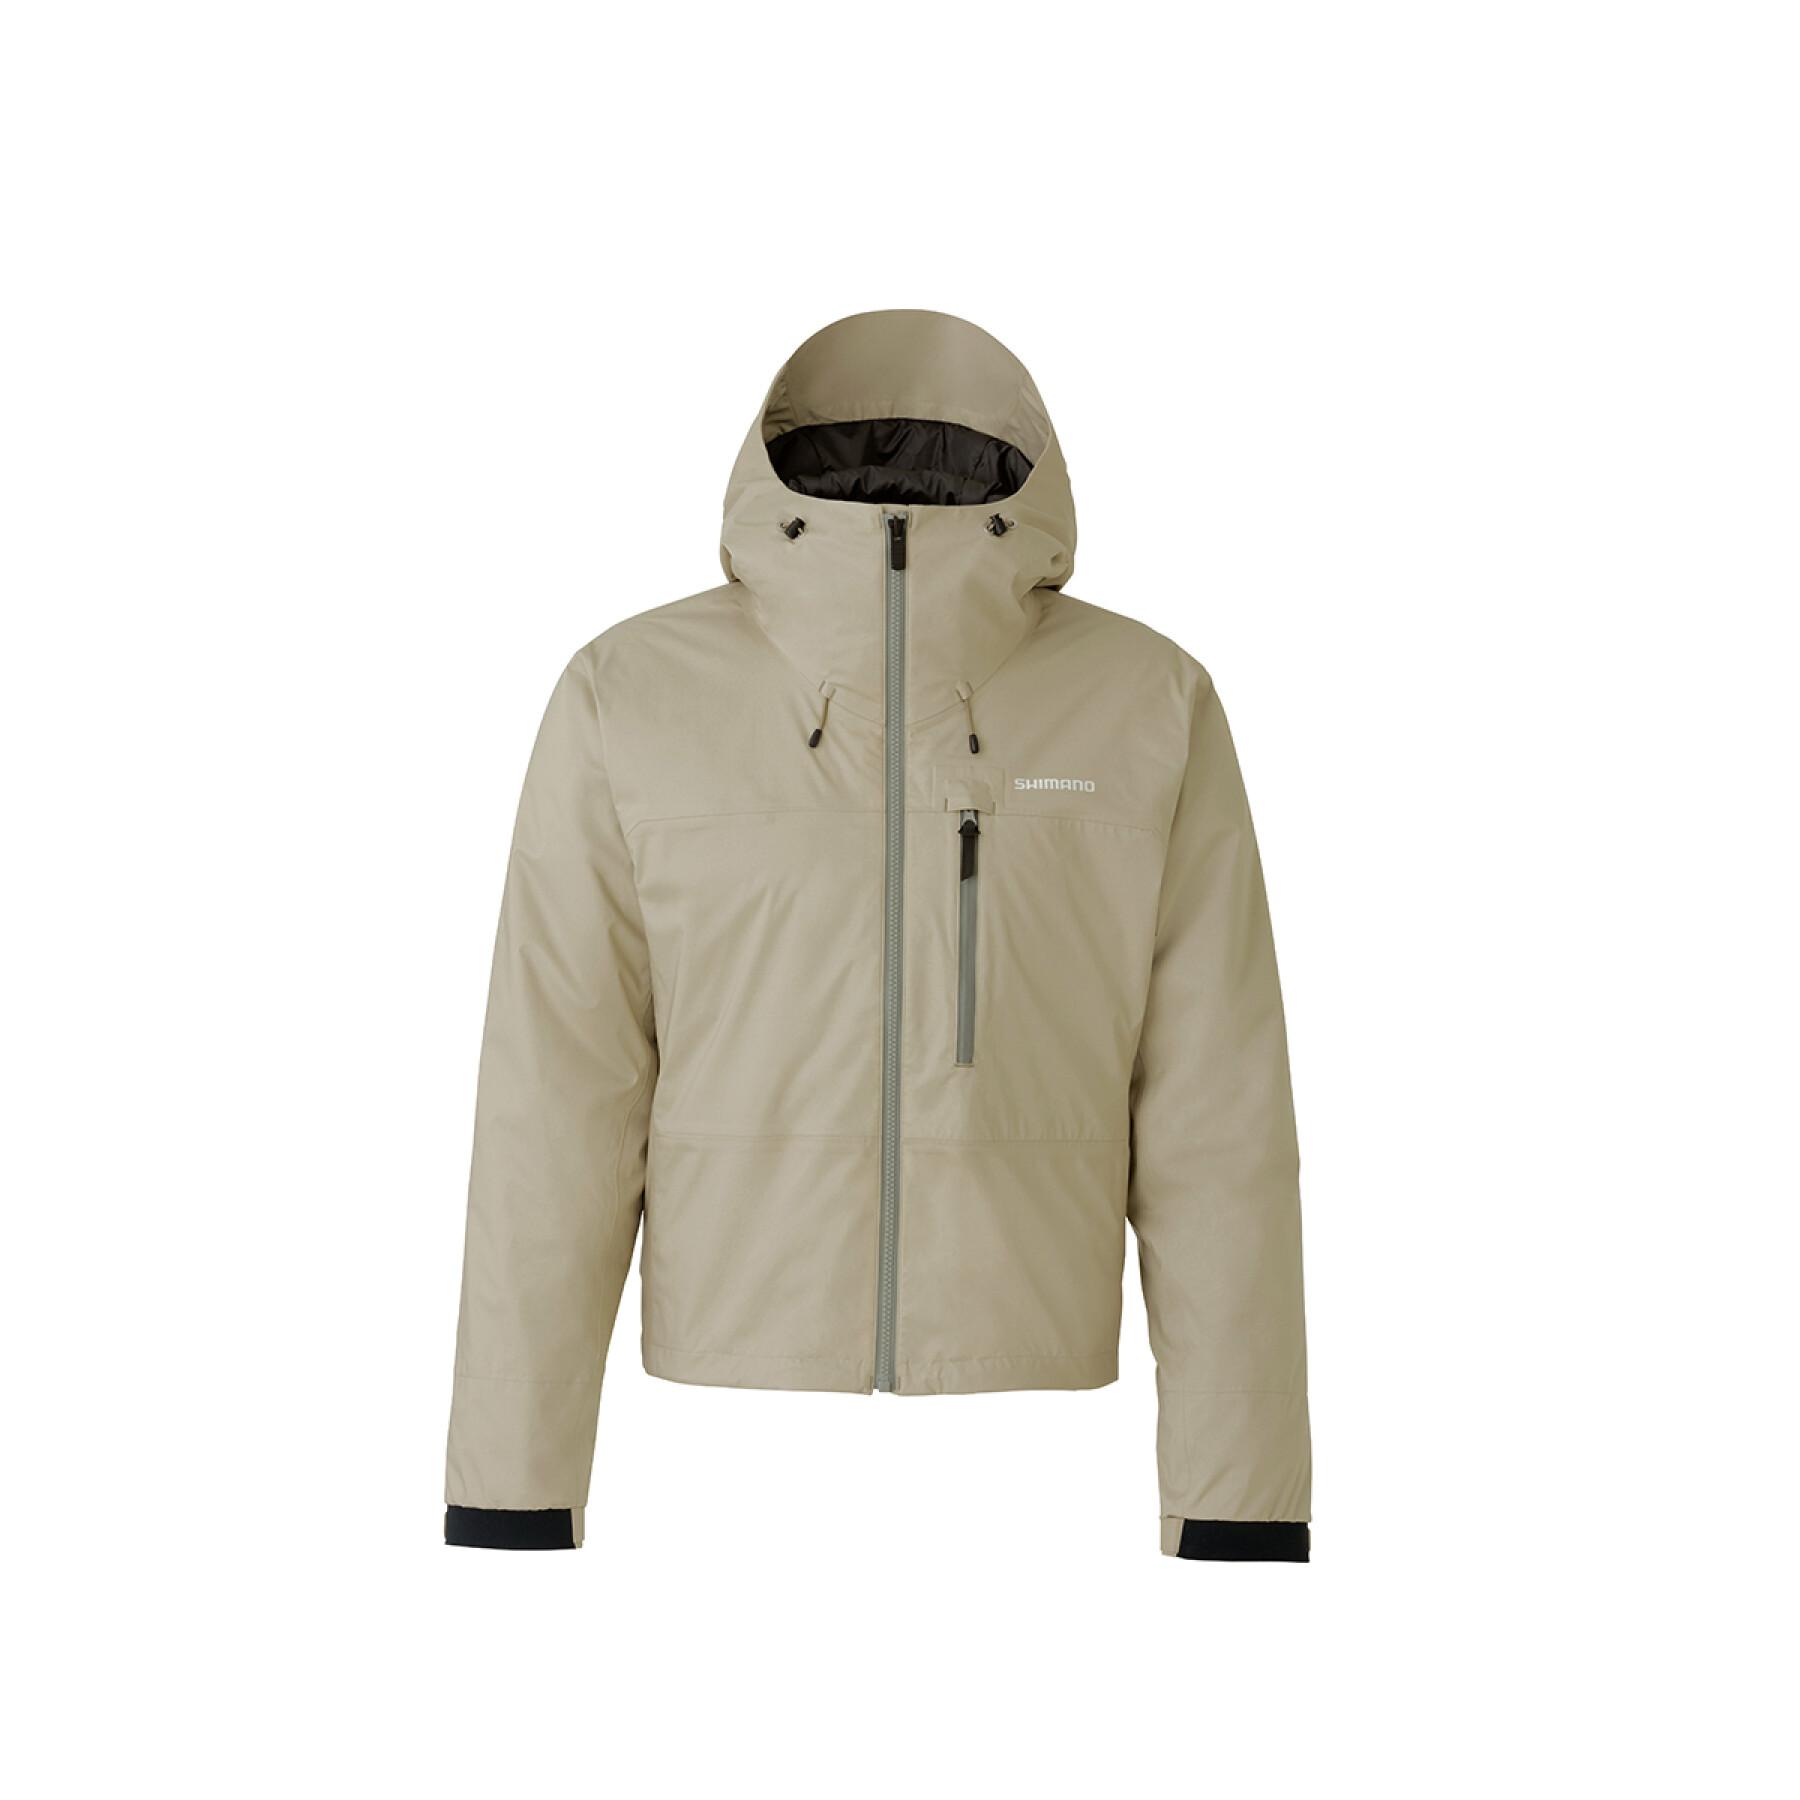 Waterproof jacket Shimano Durast